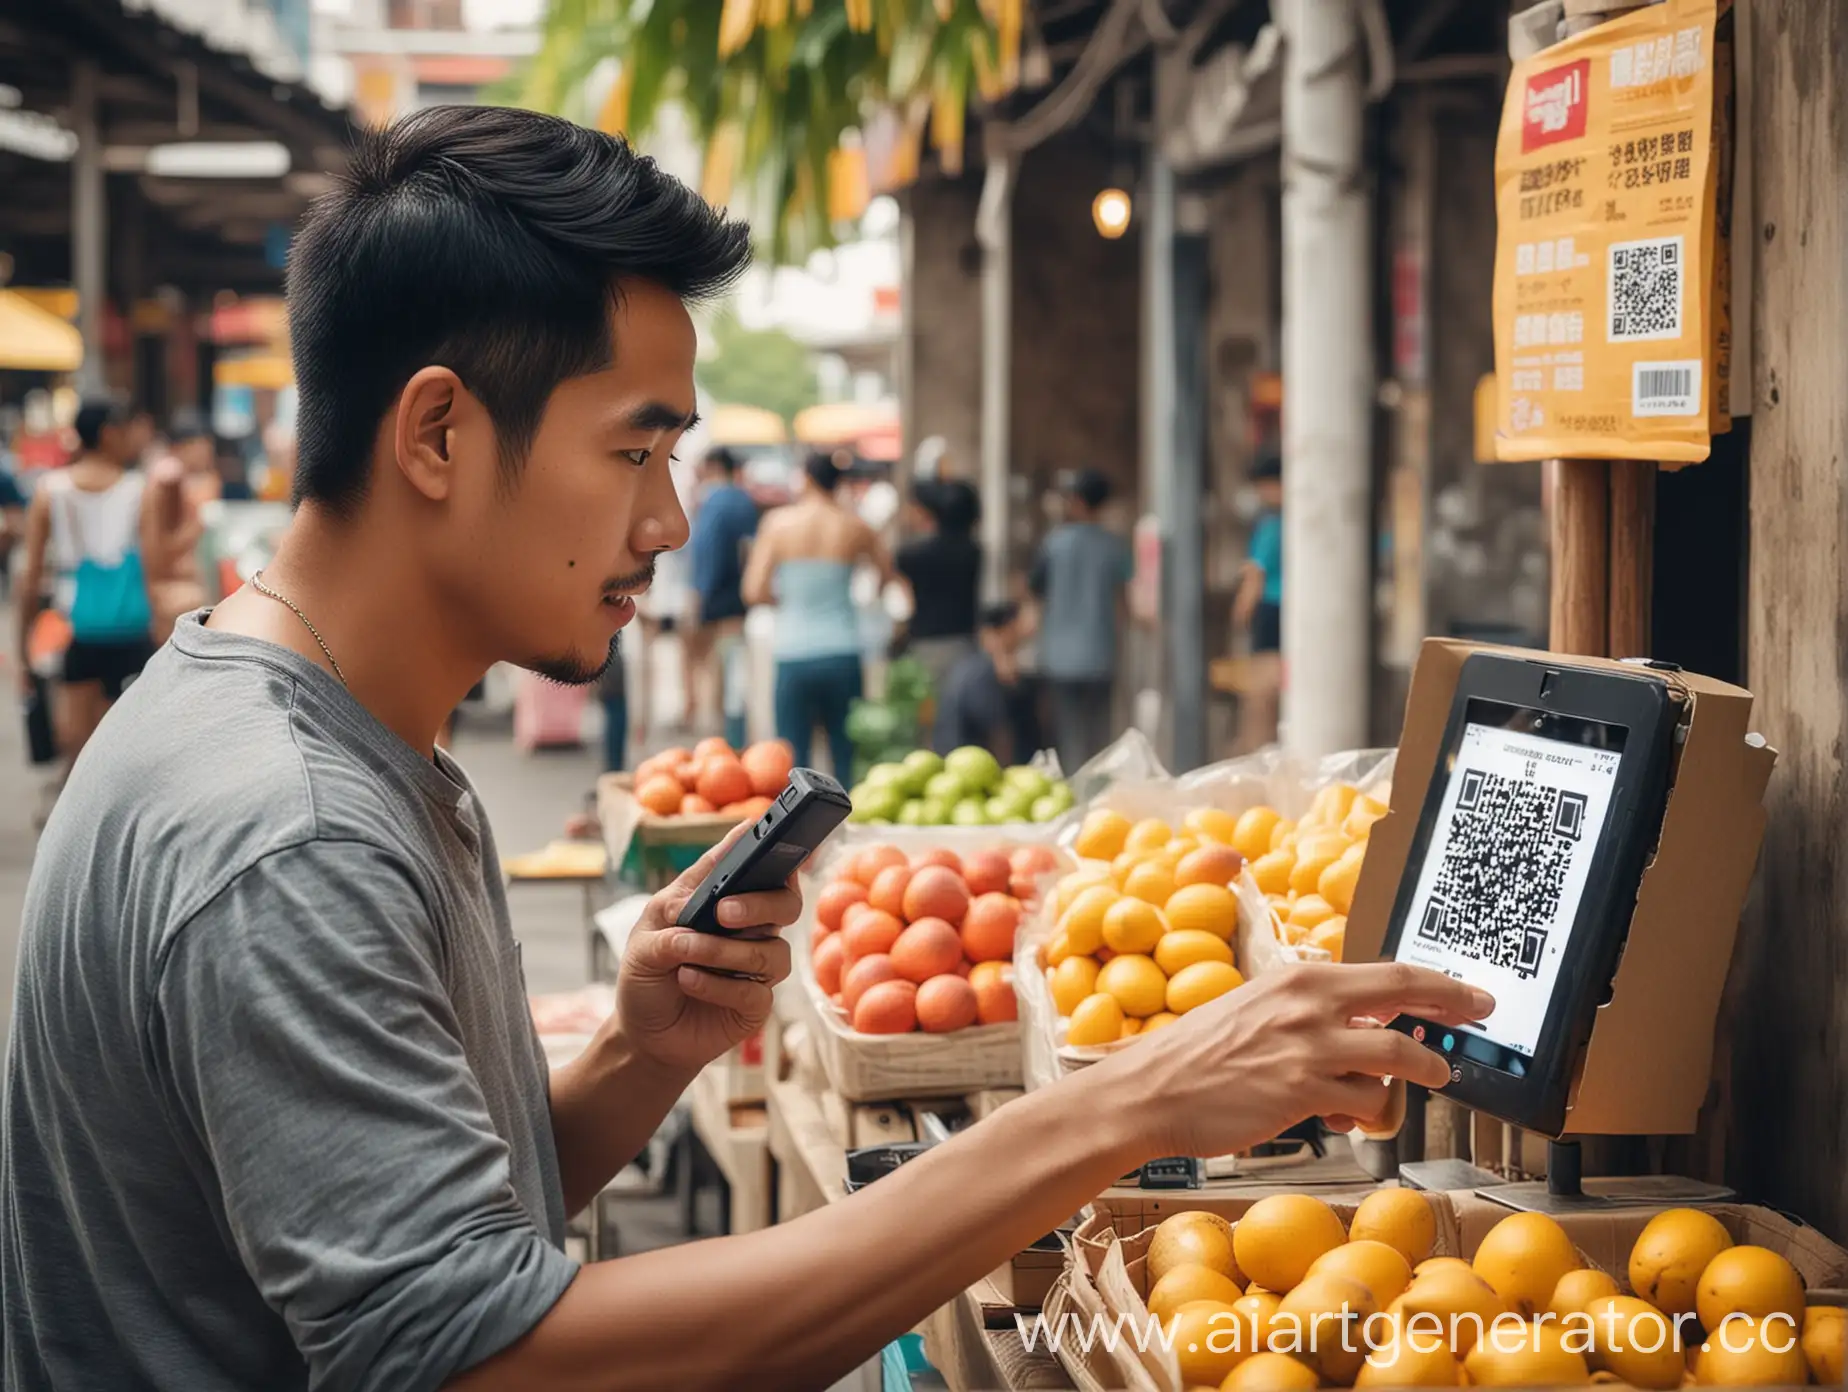 Человек сканирует QR код с помощью телефона. Человек из таиланда. Человек покупает манго с рисом. Человек находится рядом с прилавком с уличной едой и кассой